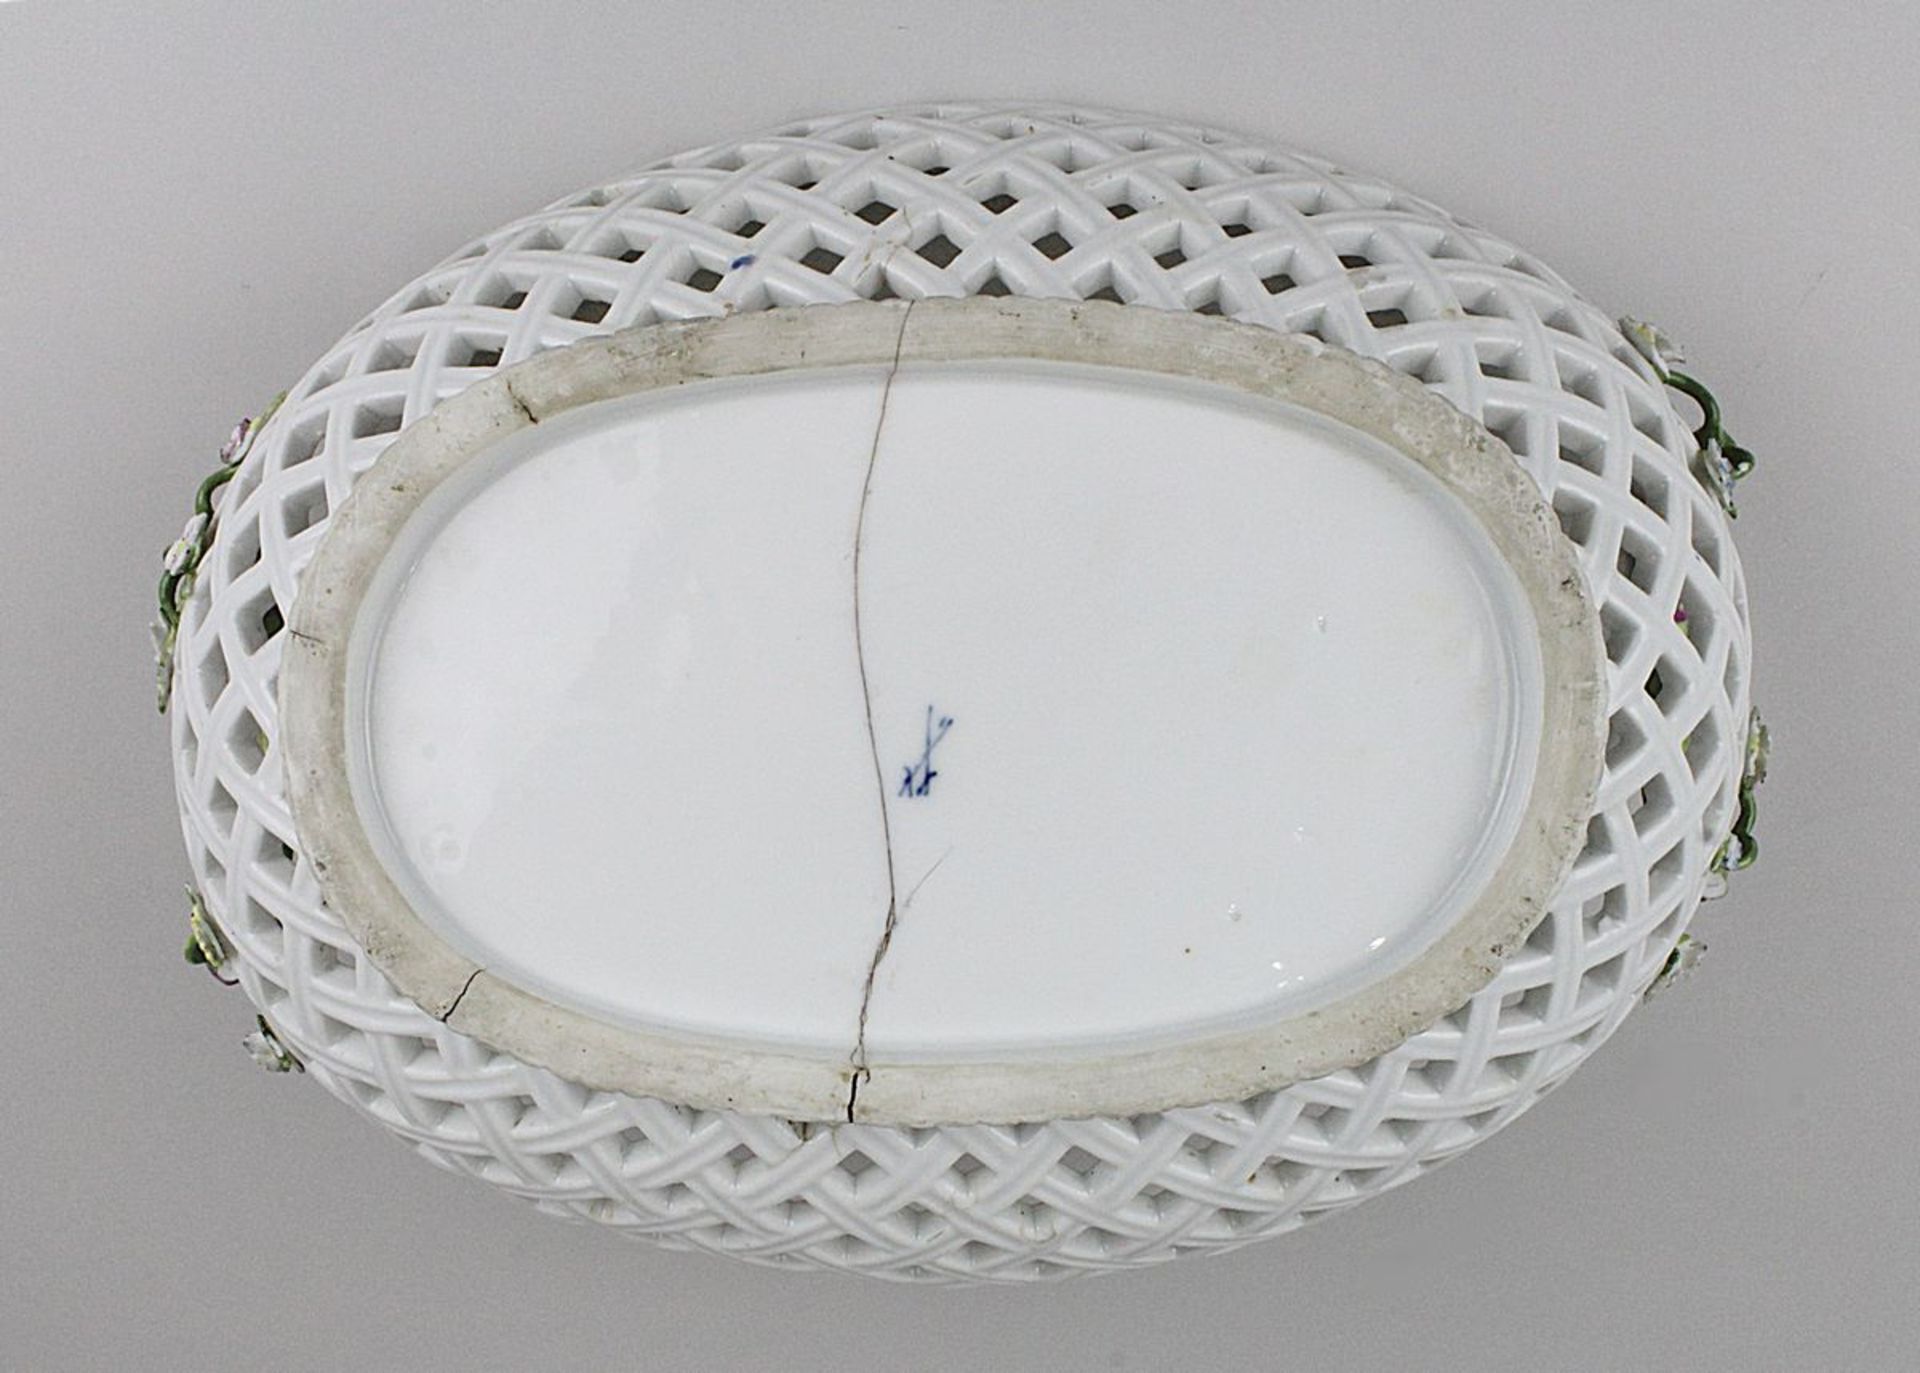 Korbschale, Meissenkopie, 19. Jh. Porzellan, weißer Scherben, durchbrochen gearbeitete Wandung mit - Bild 3 aus 3